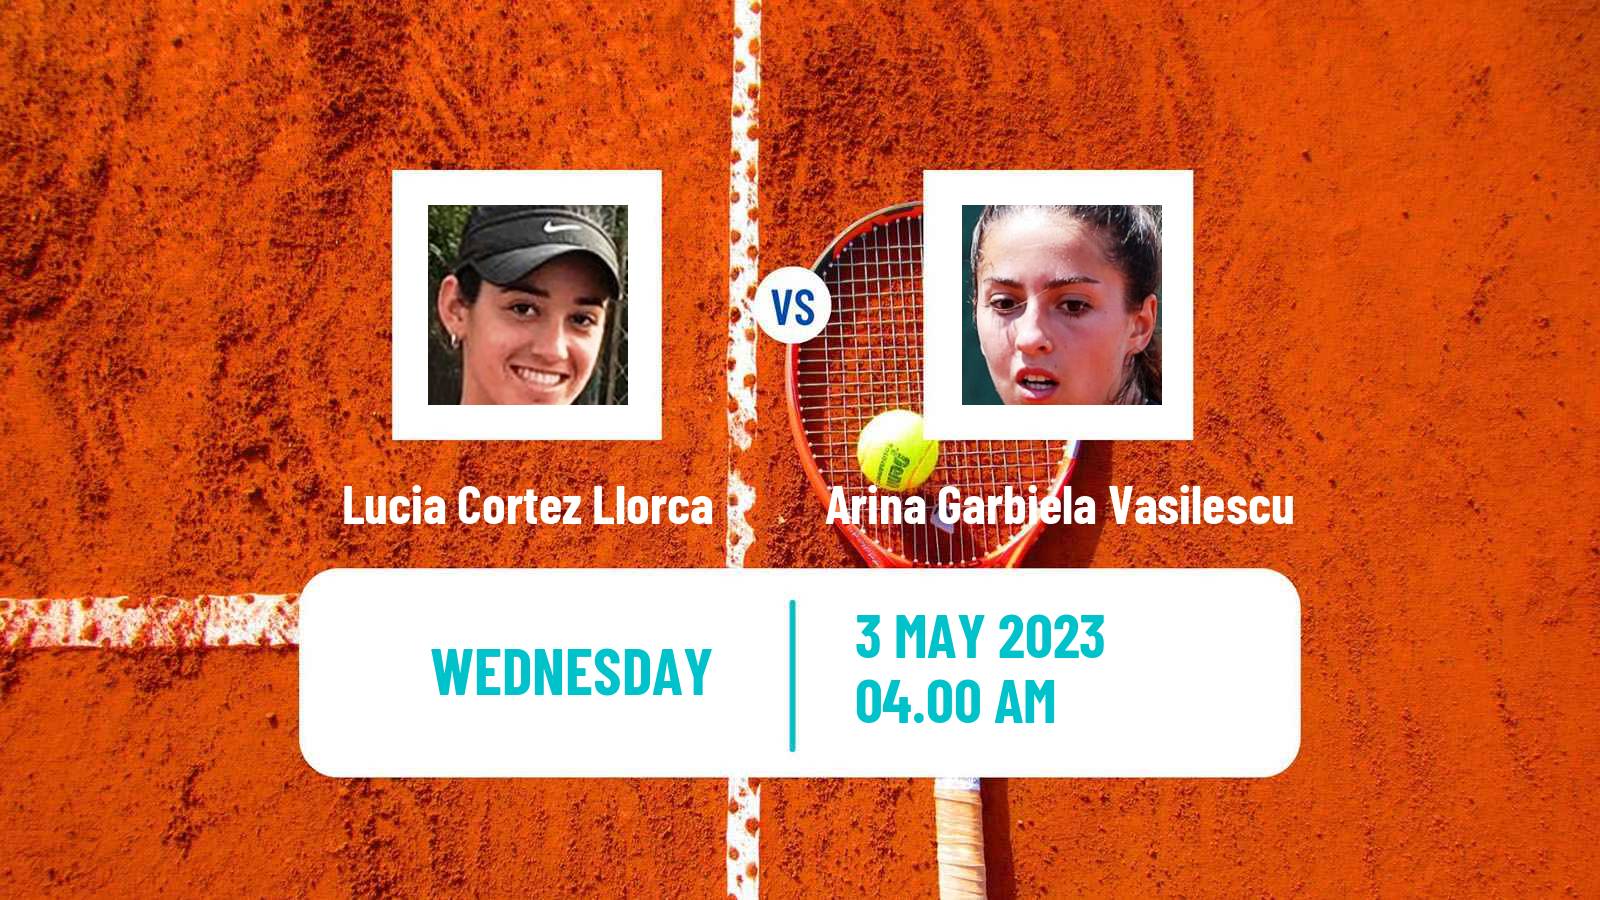 Tennis ITF Tournaments Lucia Cortez Llorca - Arina Garbiela Vasilescu